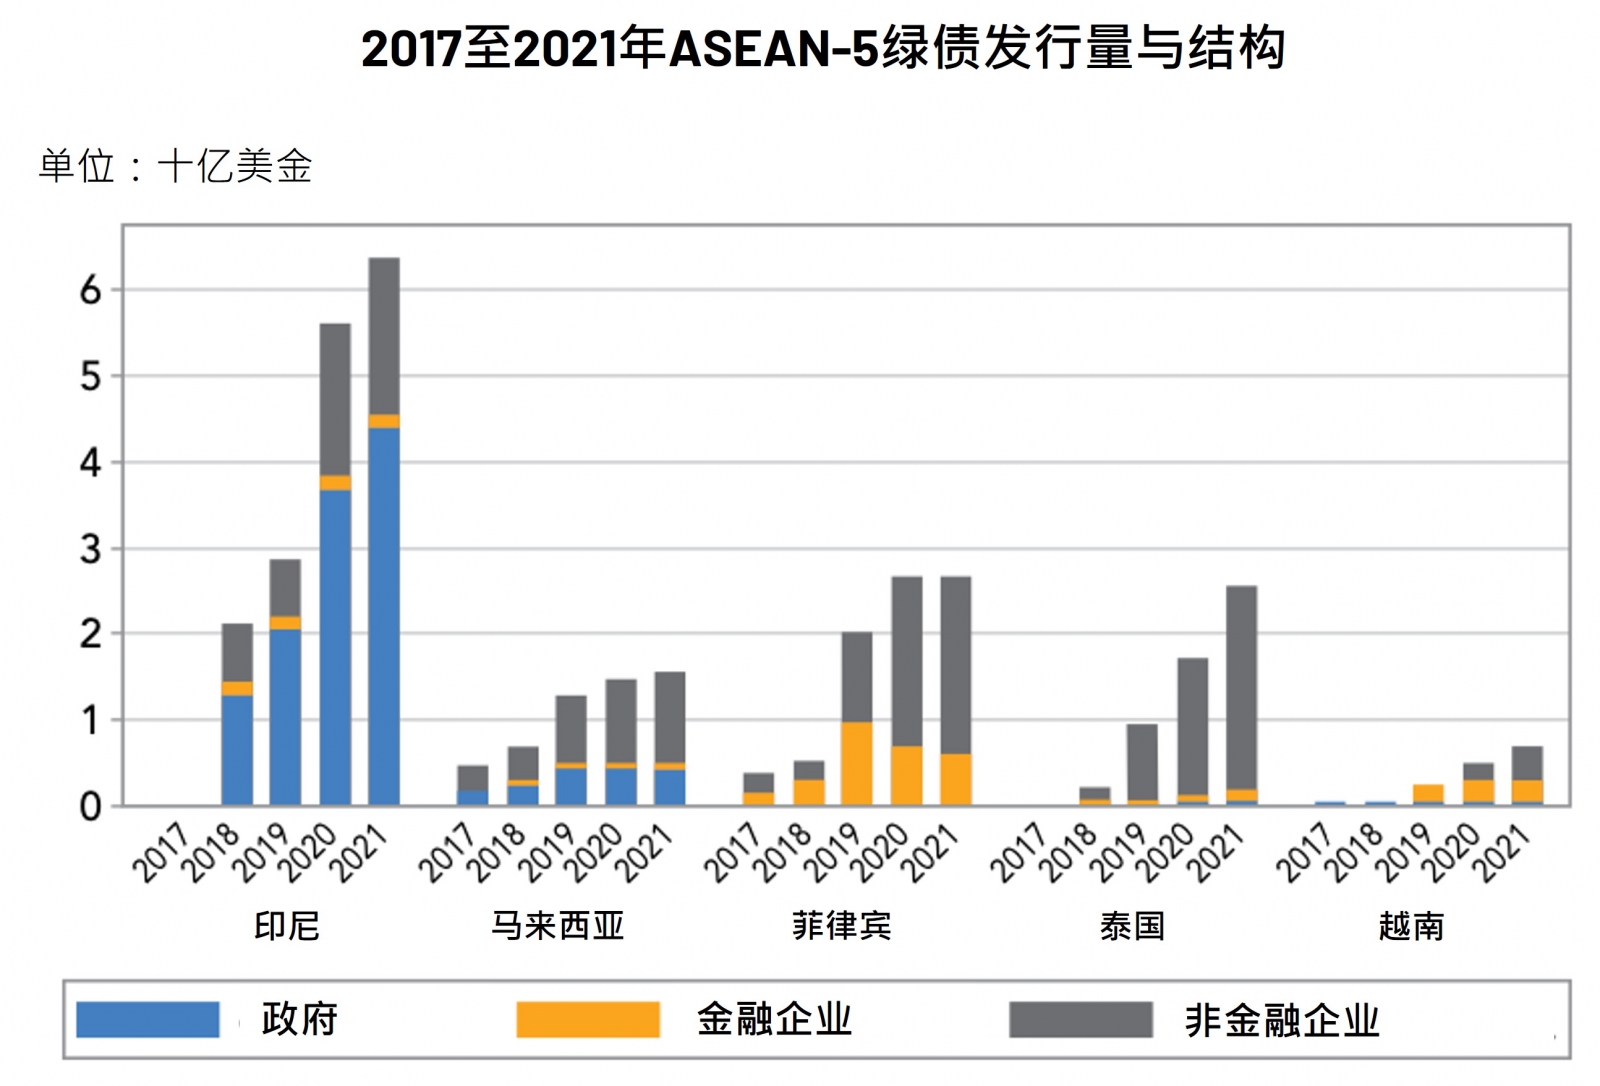 2017至2021年ASEAN-5绿债发行量与结构